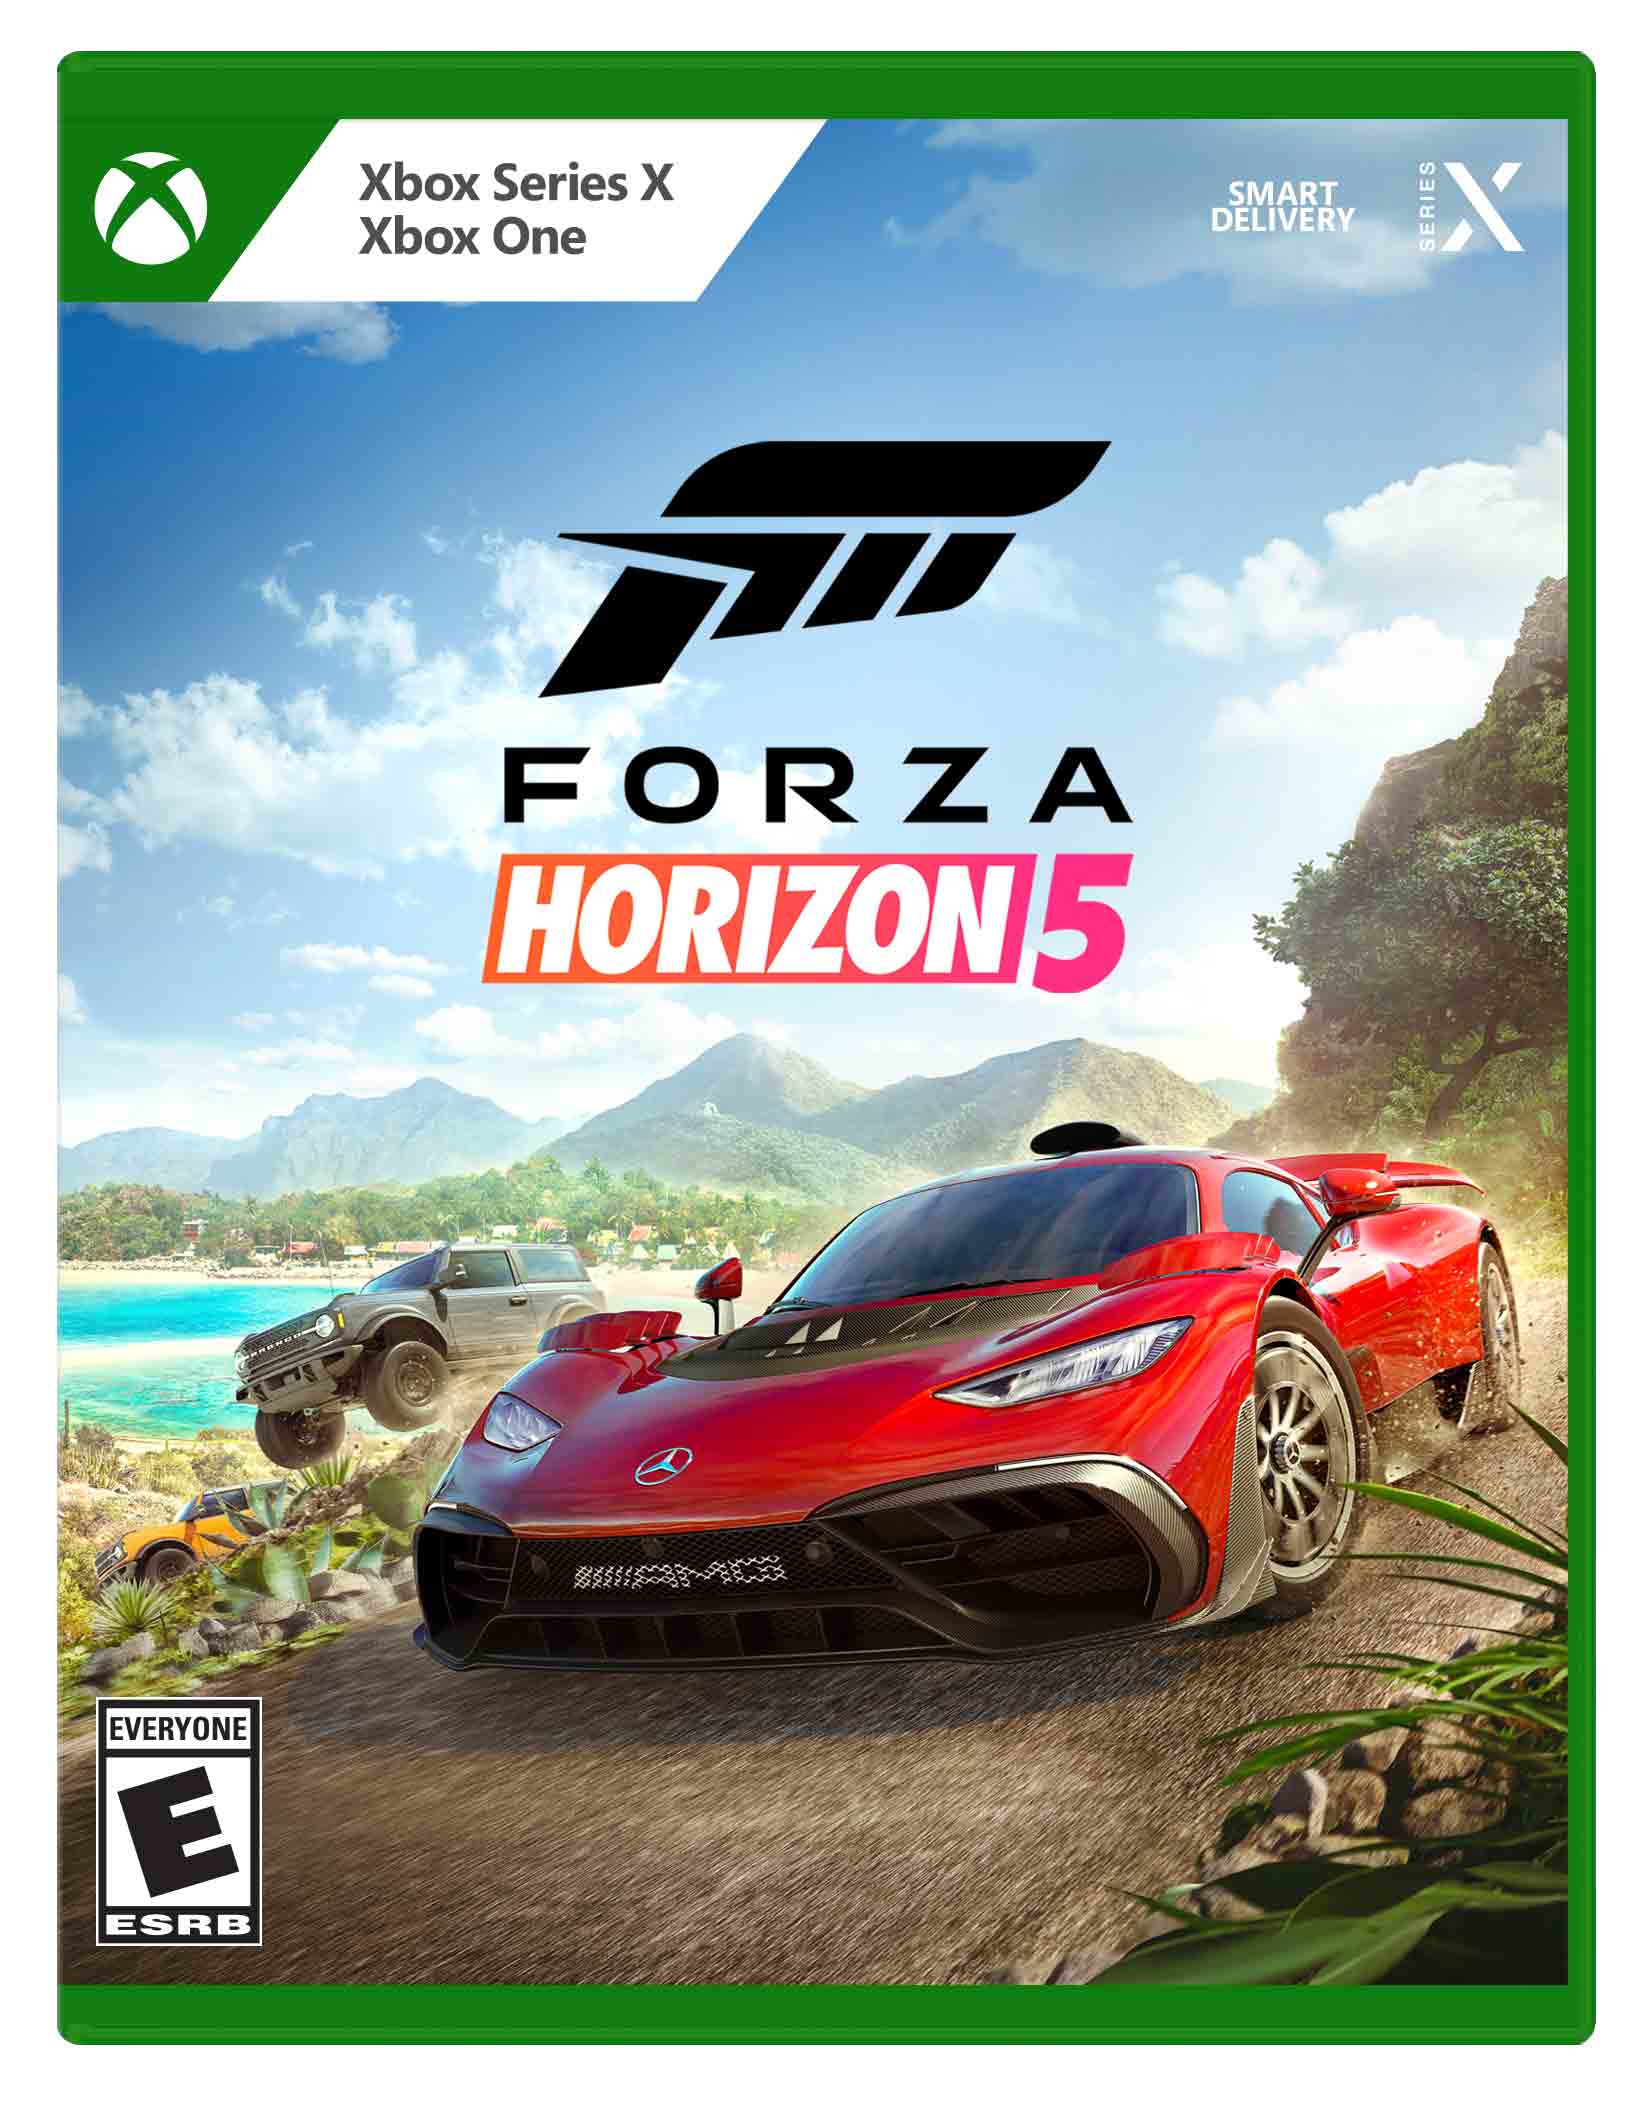 Roeispaan Uitwisseling ik ben trots Forza Horizon 5 Standard Edition Xbox One, Xbox Series X - Best Buy